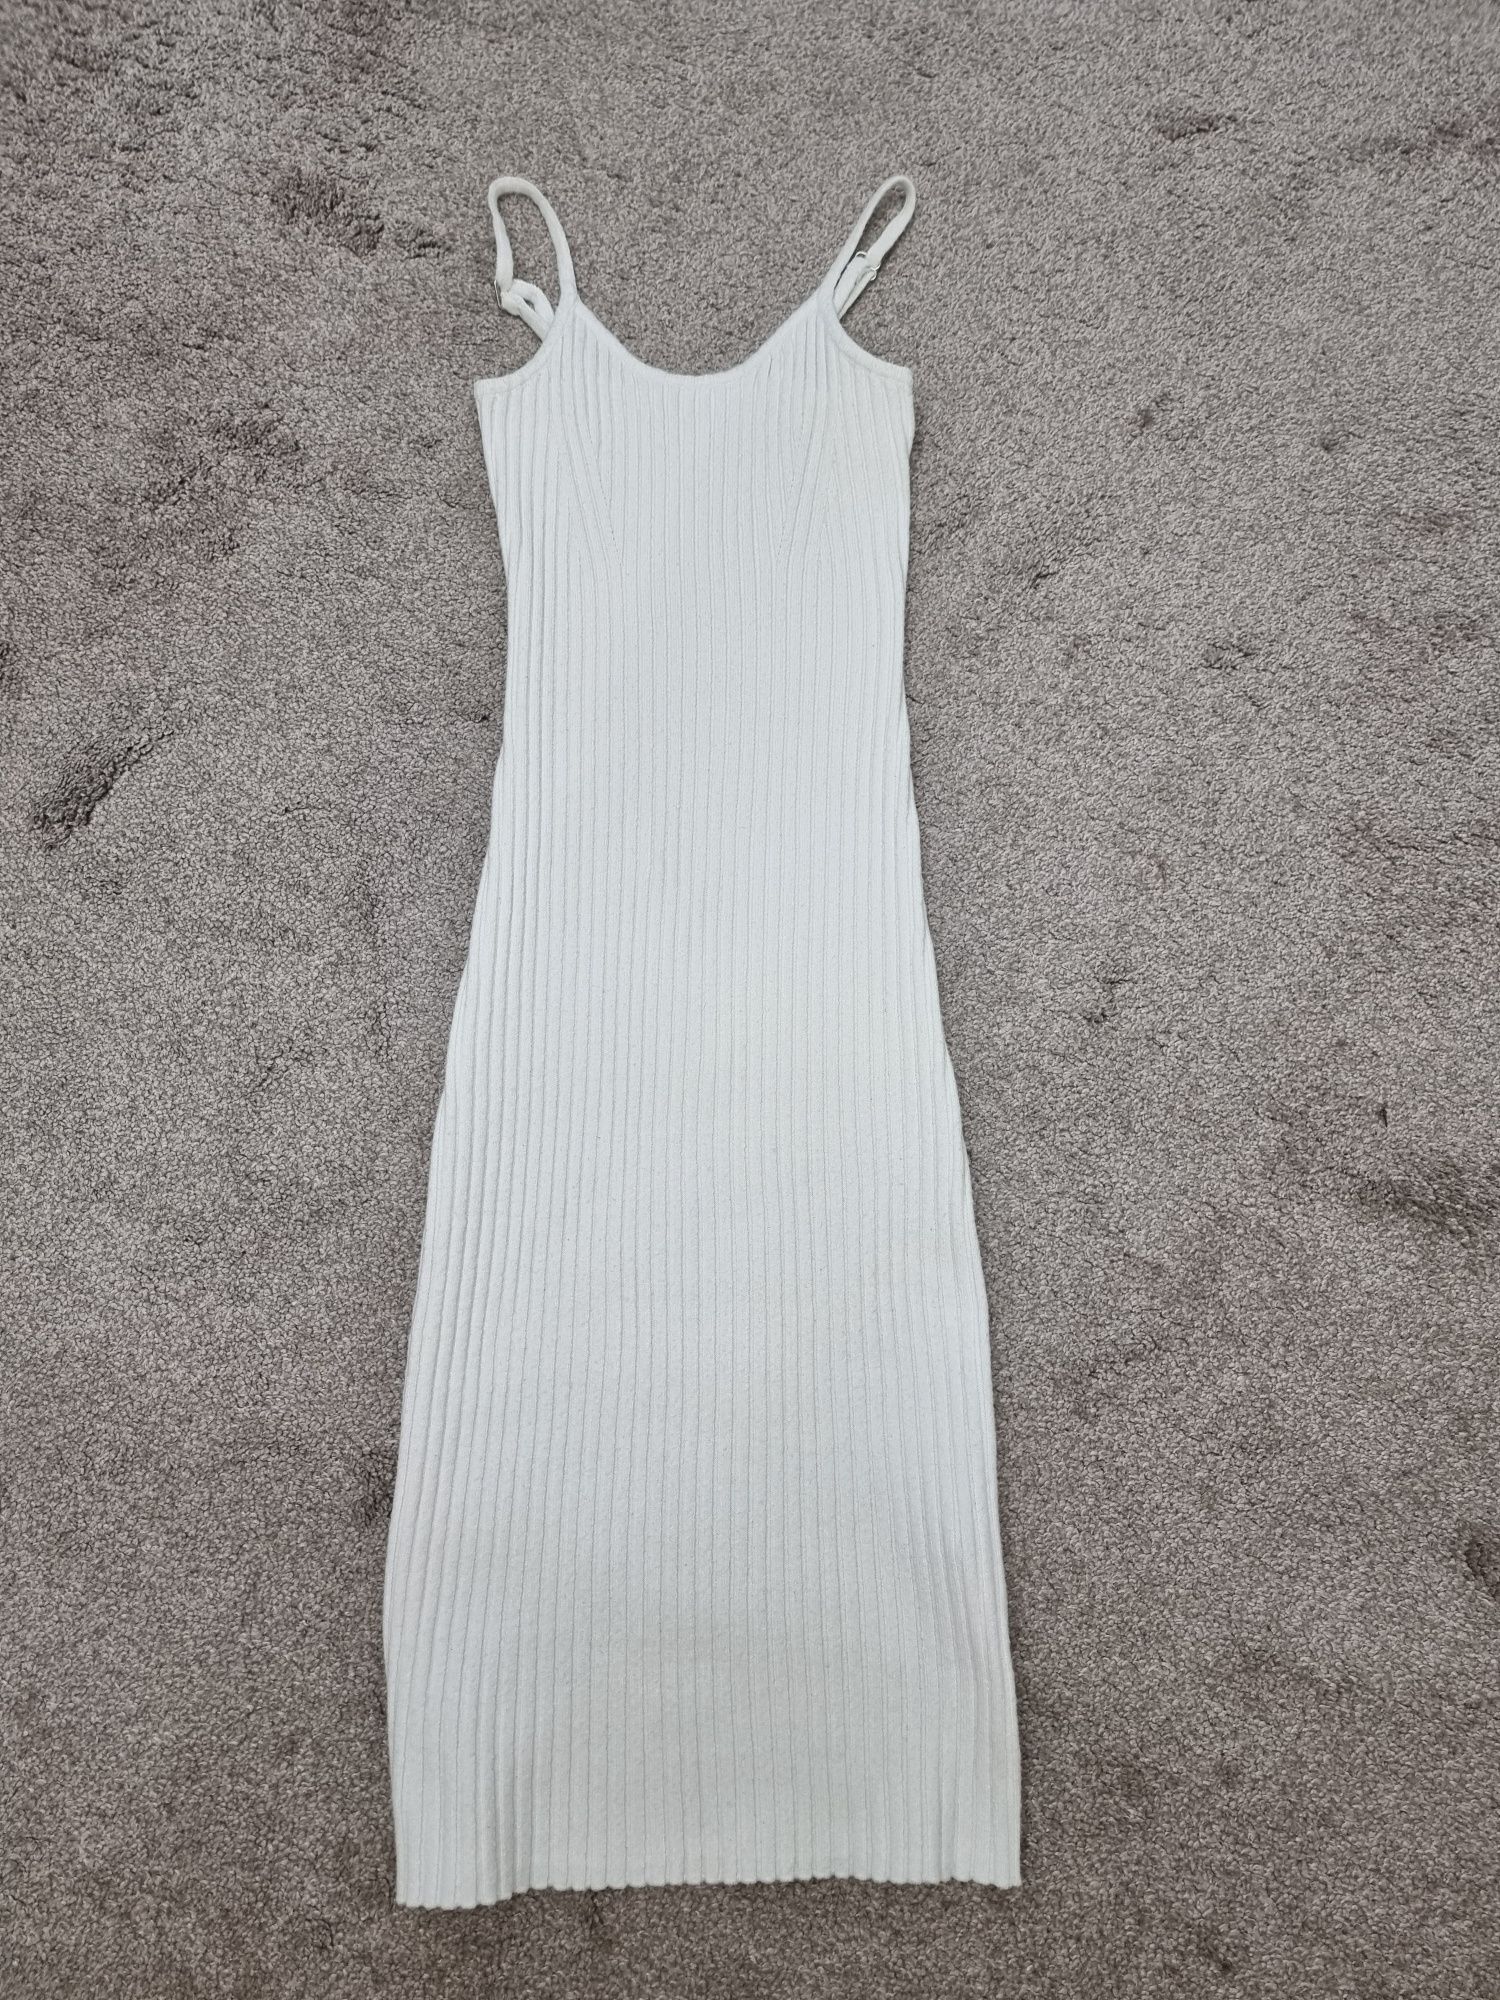 Стильное вязаное белое платье рубчкик Morgan xs-s